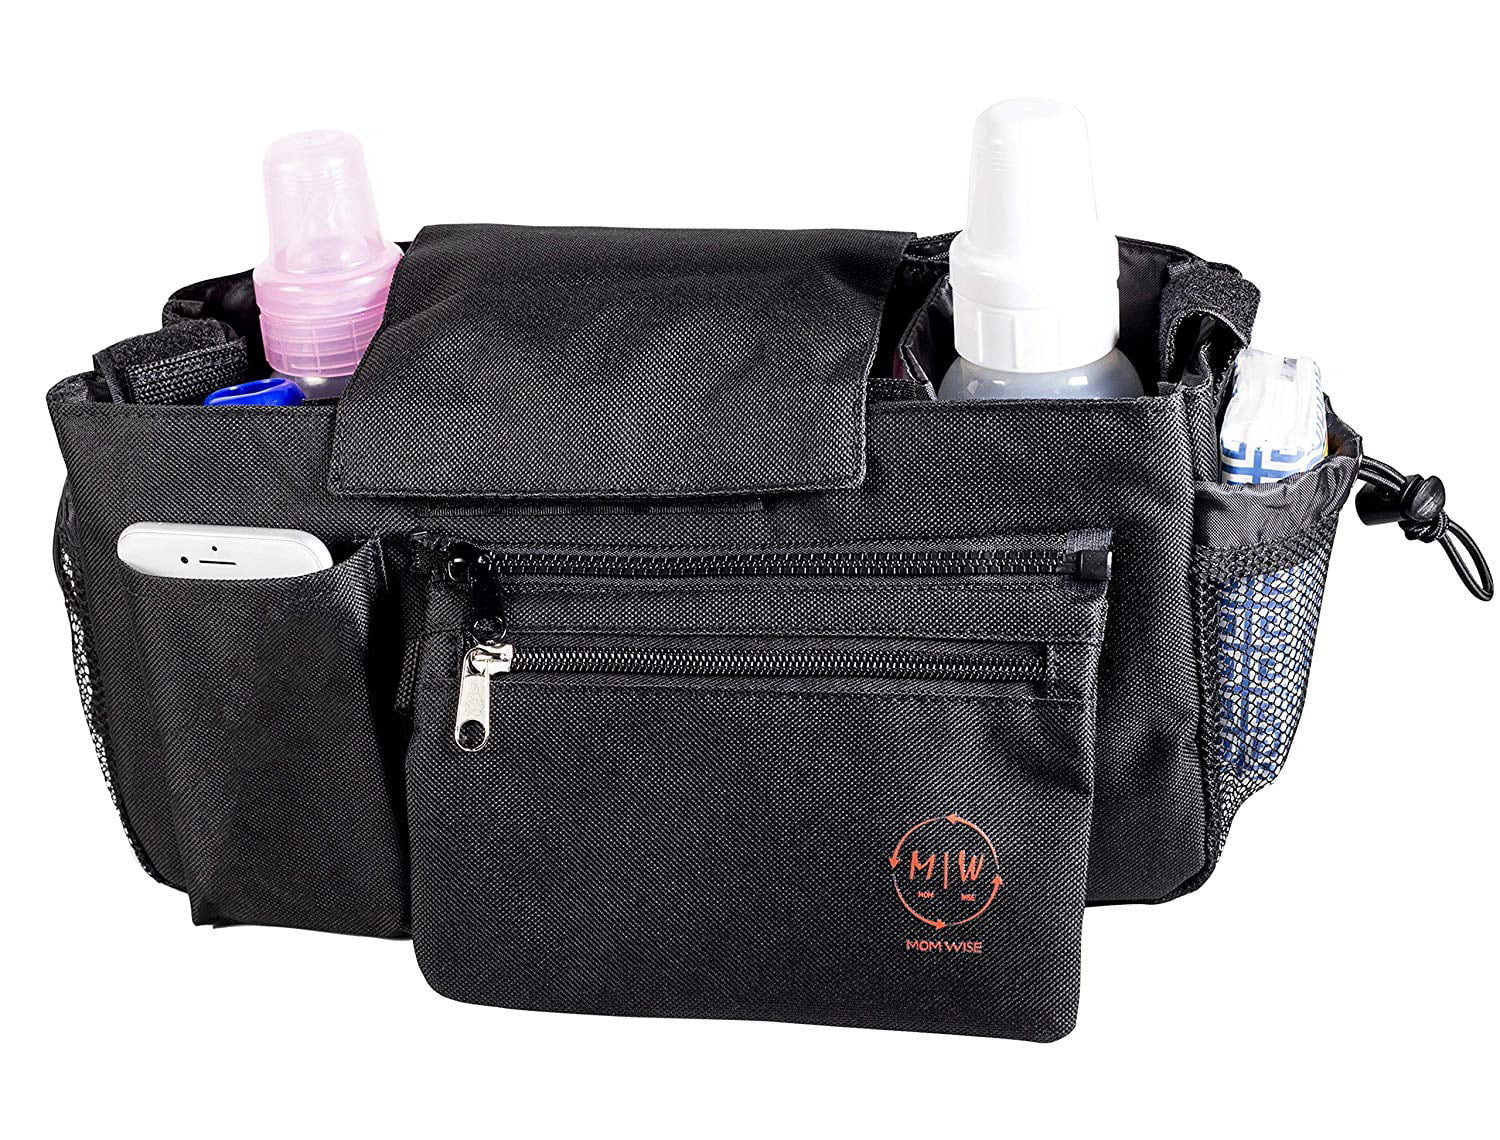 Universal Buggy Baby Pram Organiseur Bottle Holder stroller bag g5g9 Caddy k4h7